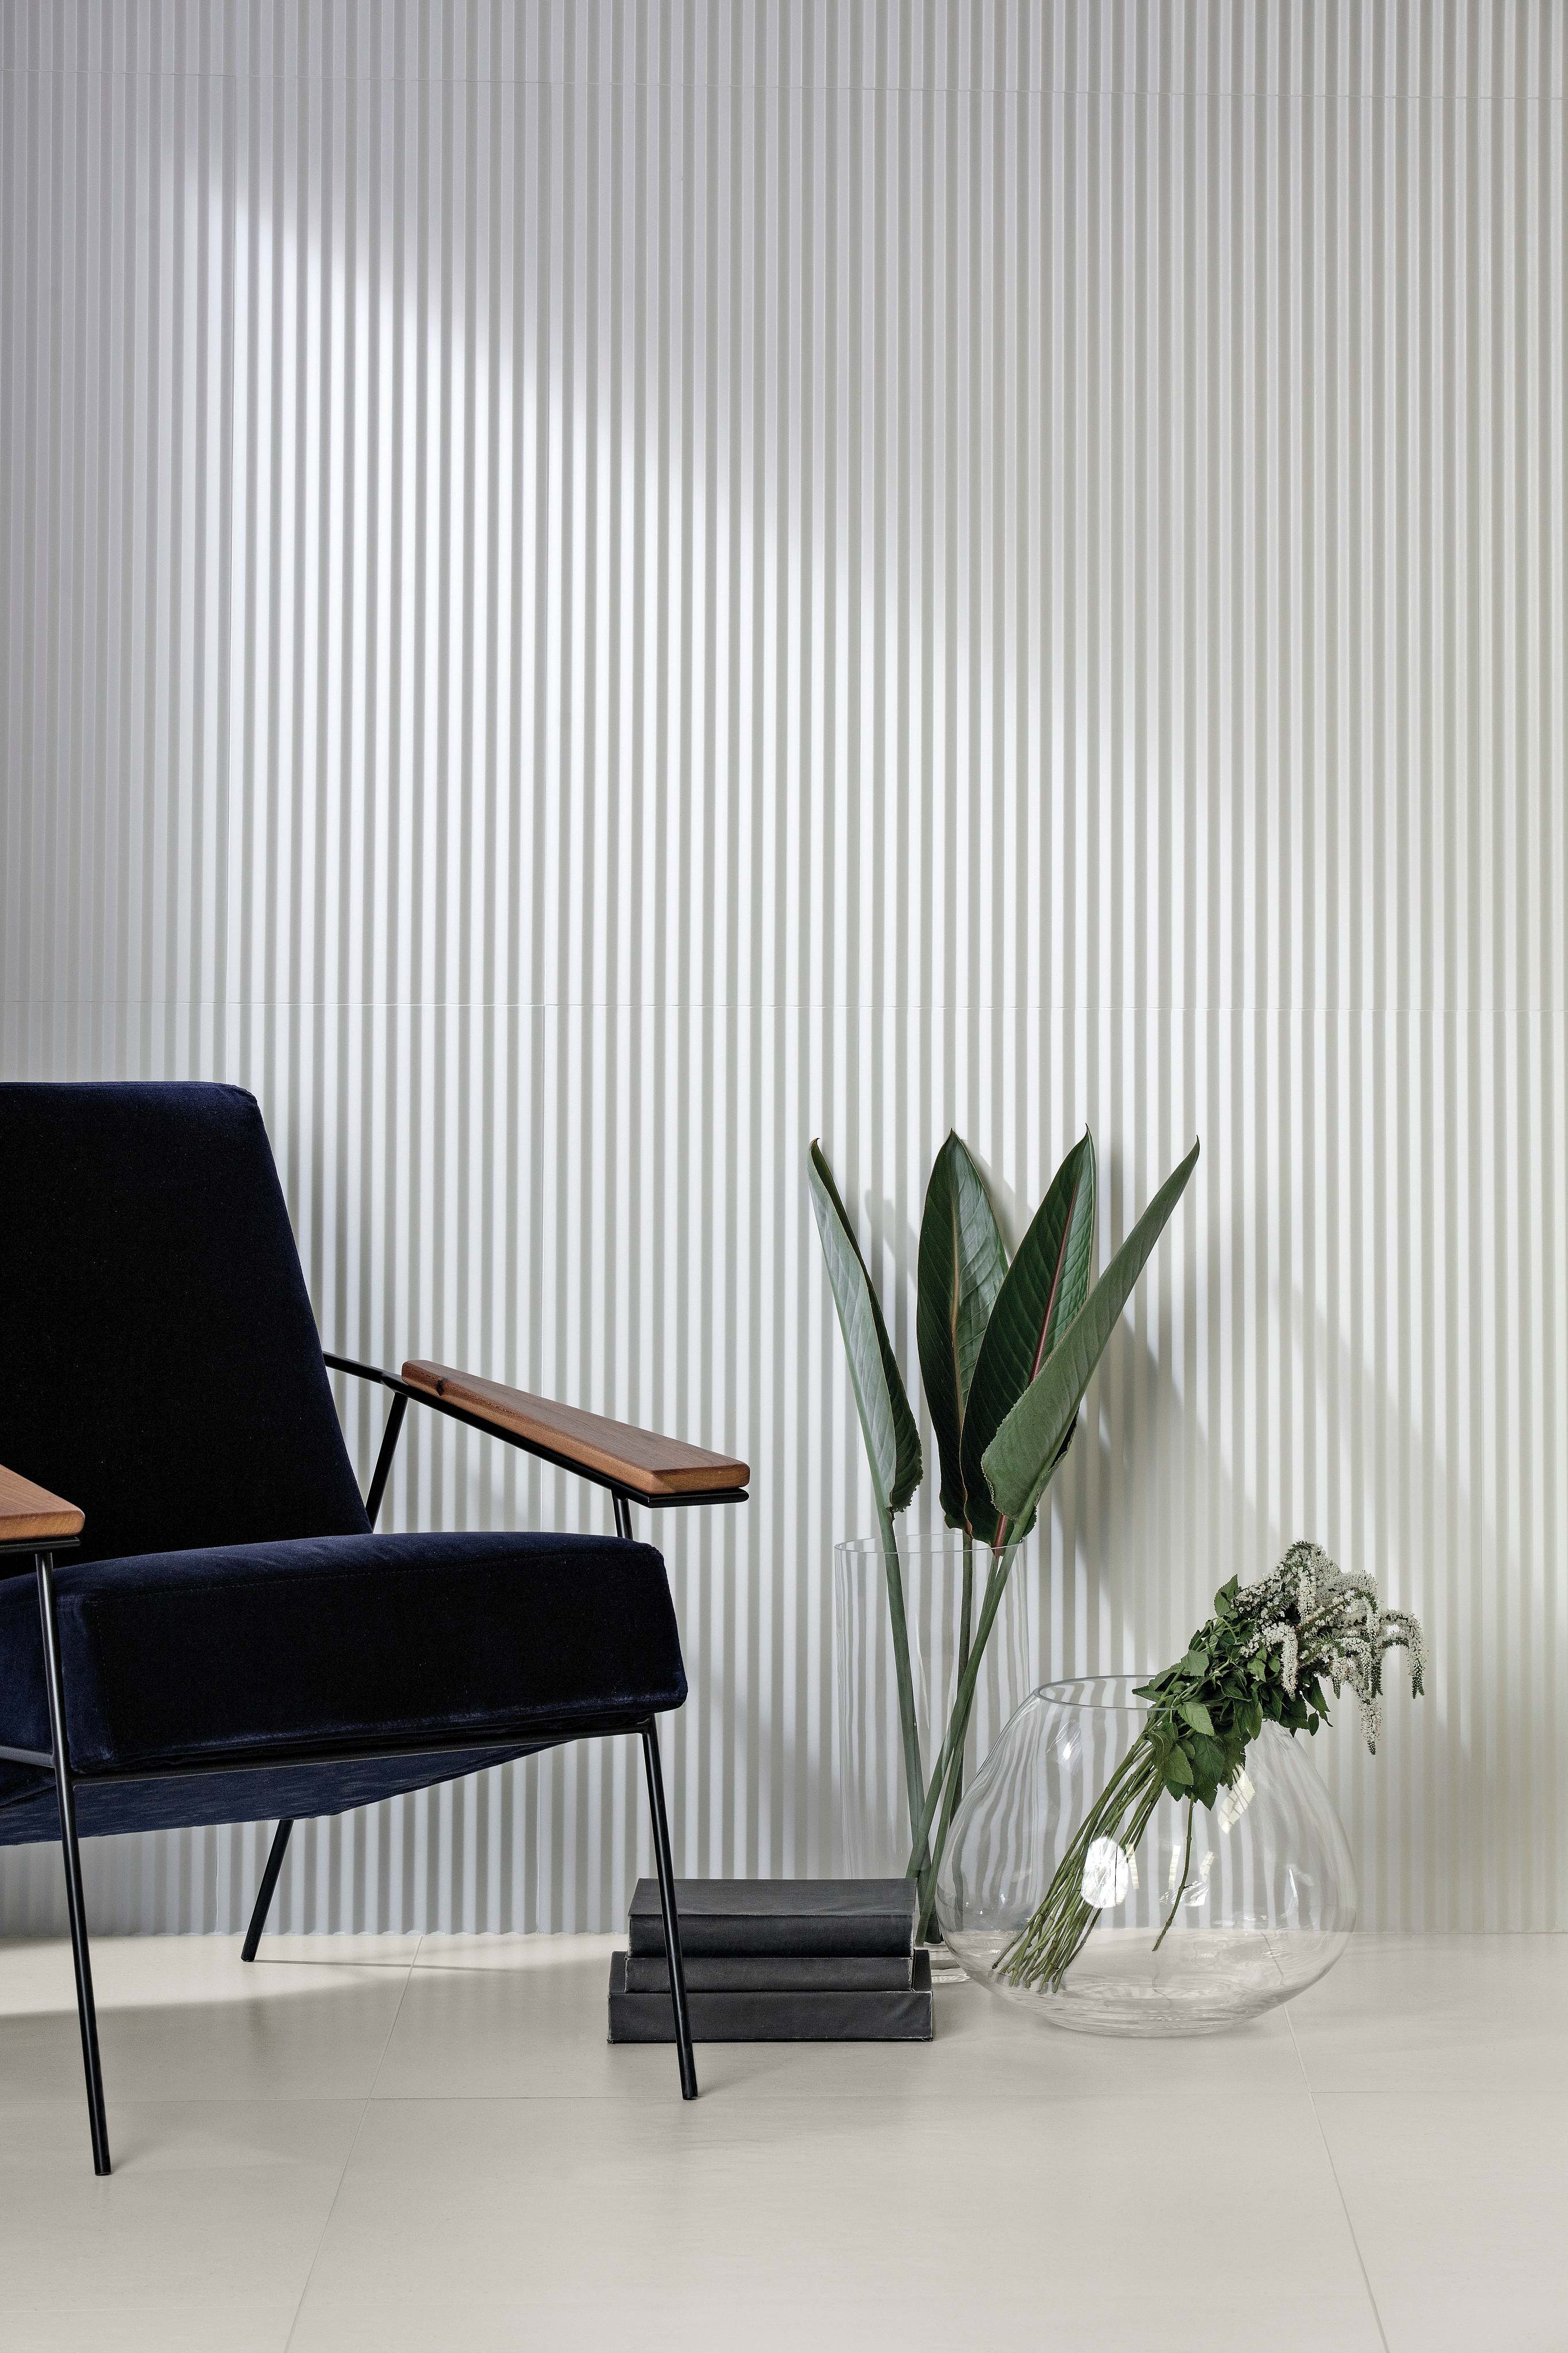 Paredes listradas verticais com porcelanato Zigzag White em projeto contemporâneo de sala de espera (Projeto: Portobello S.A.)